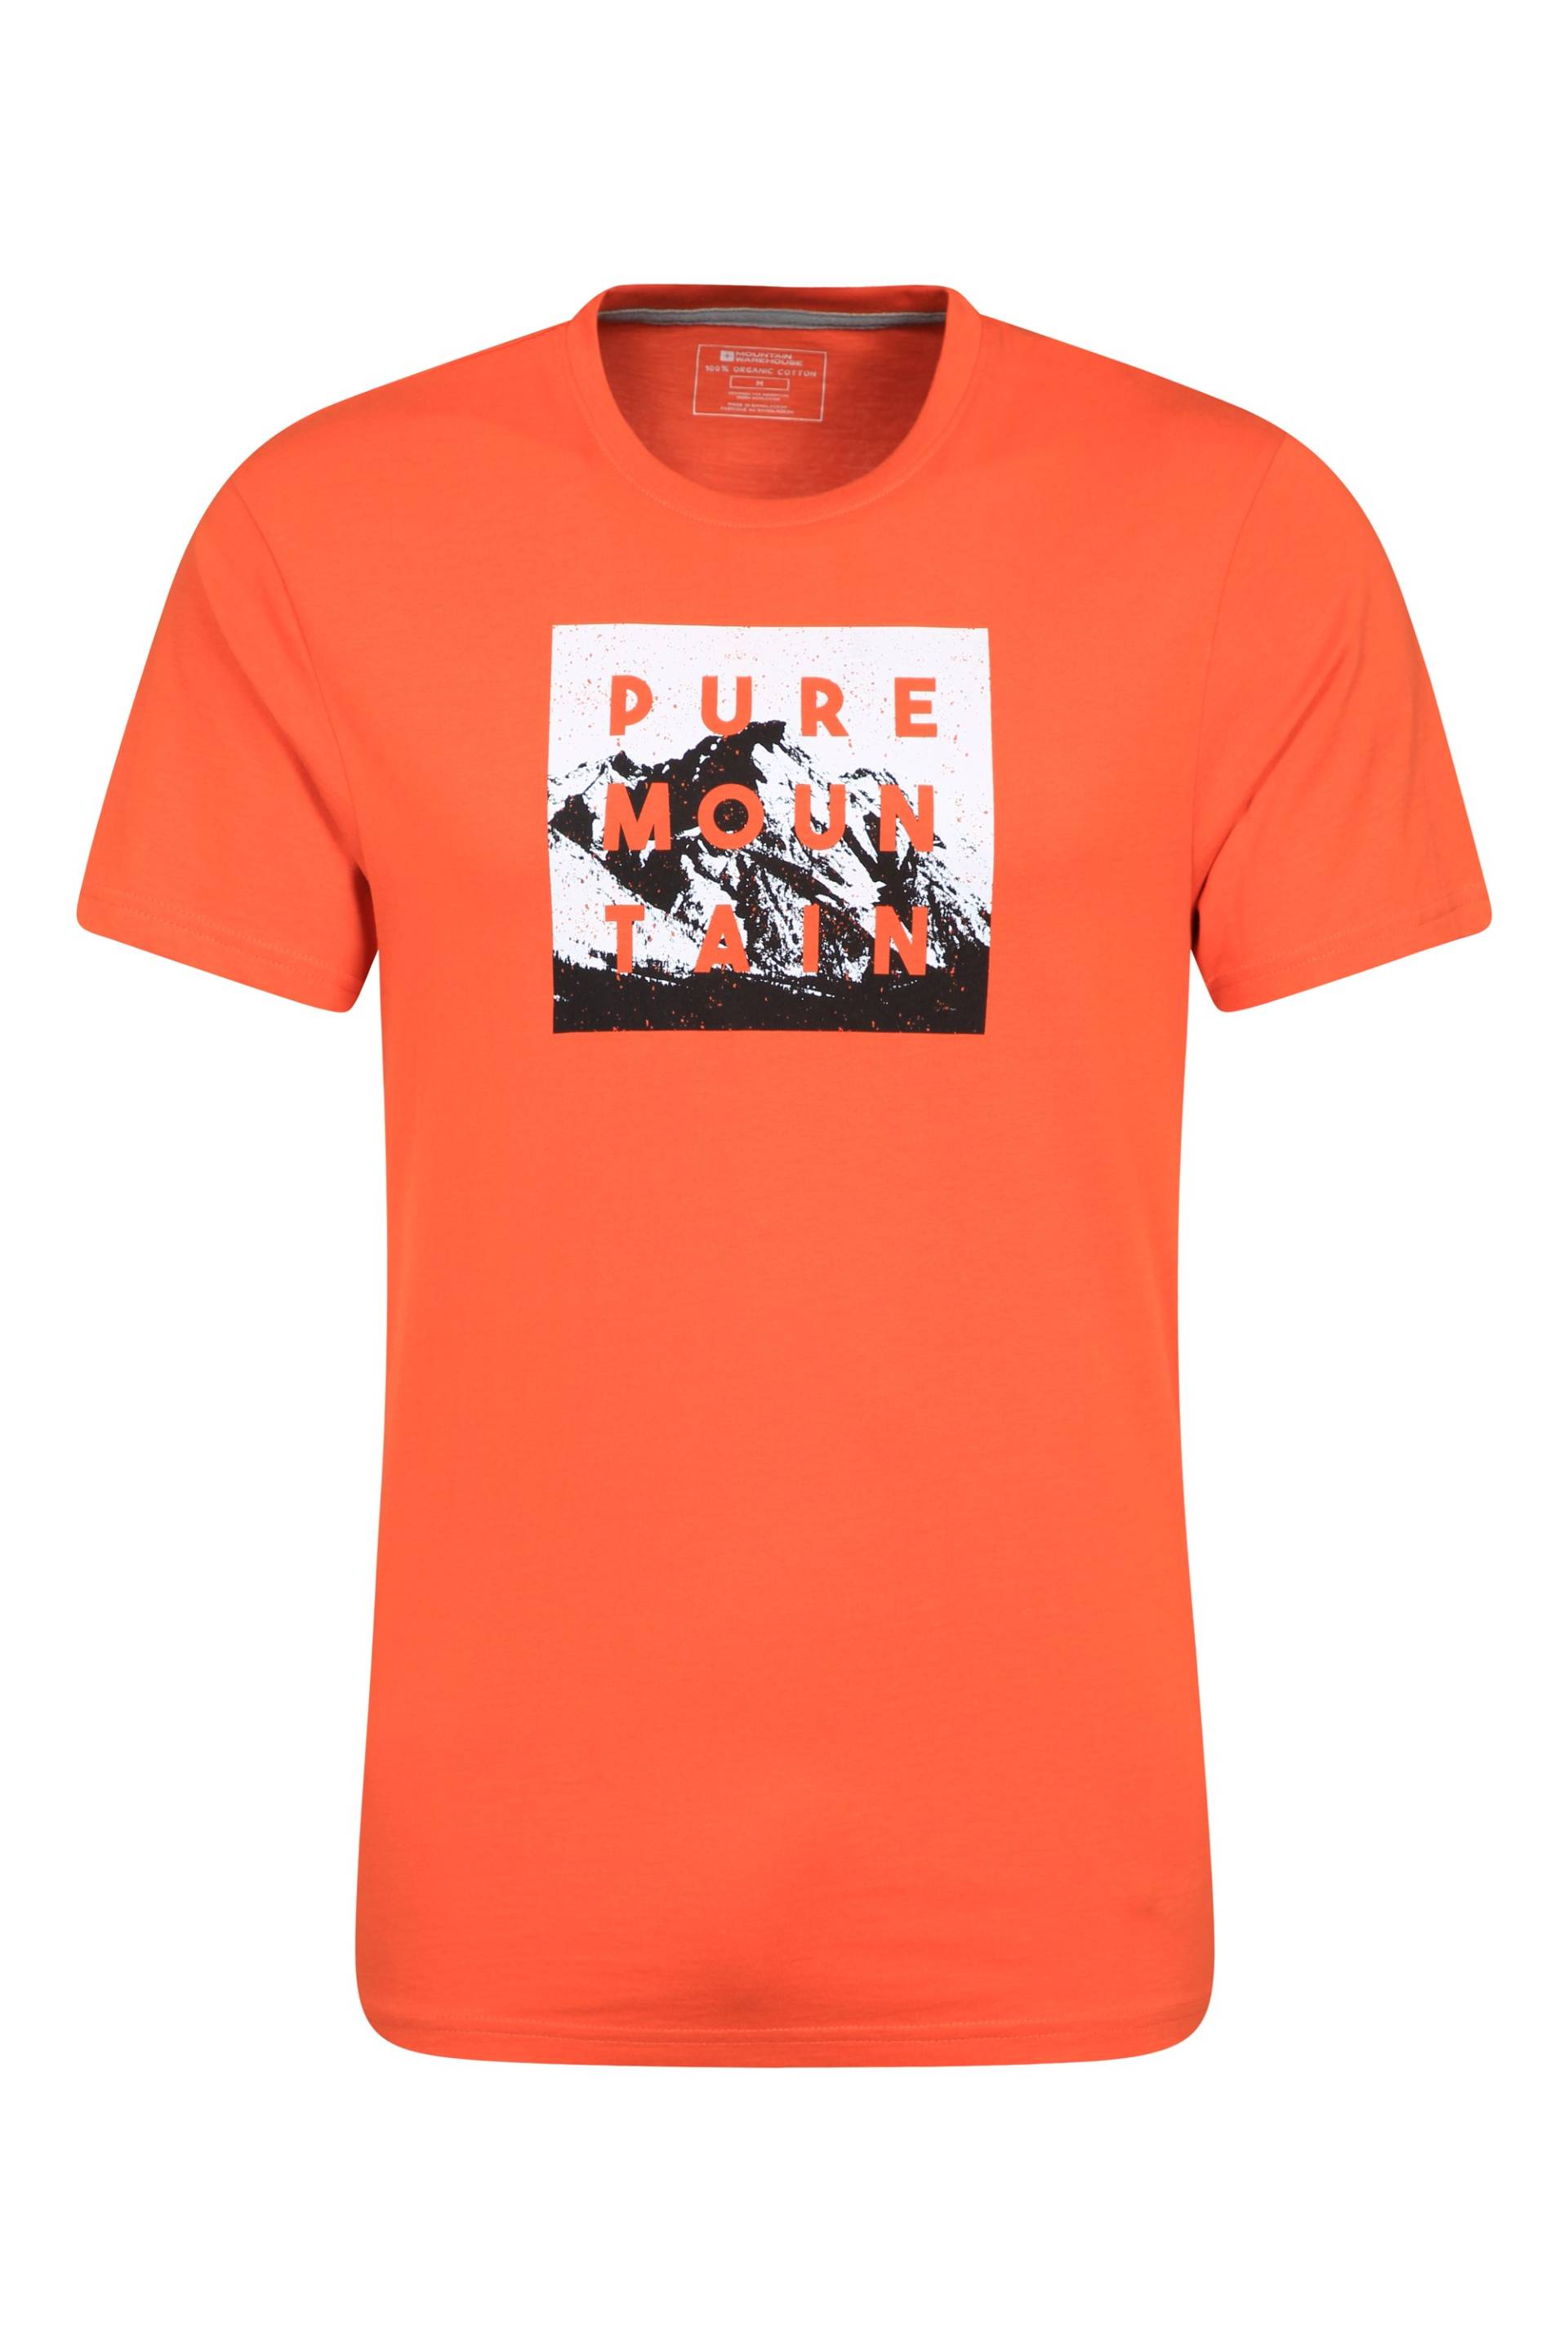 Pure Mountain Bio-Baumwoll Herren T-Shirt - Orange von Mountain Warehouse